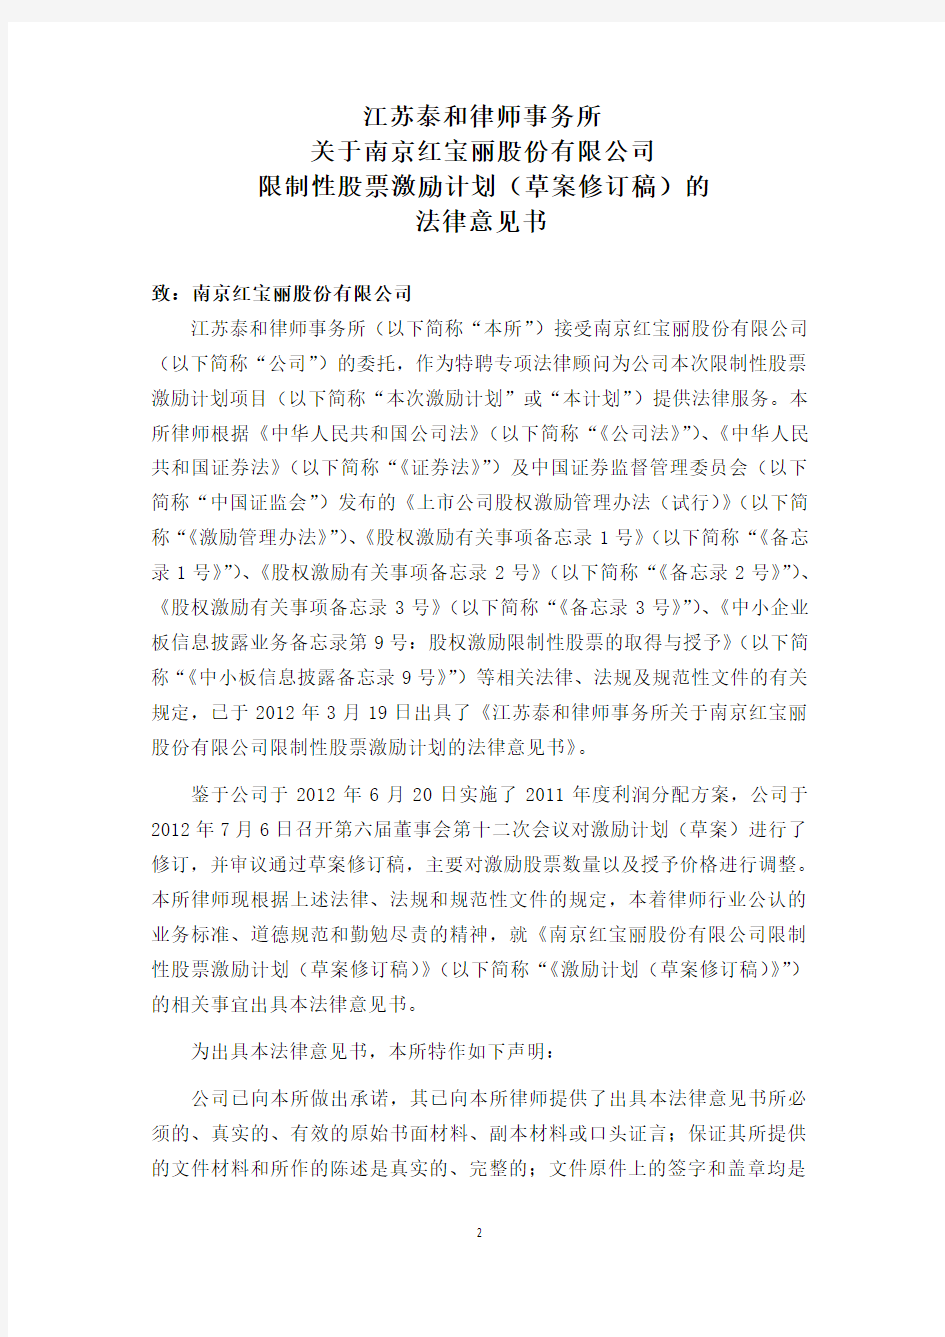 江苏泰和律师事务所关于南京红宝丽股份有限公司限制性股票激励计划的法律意见书